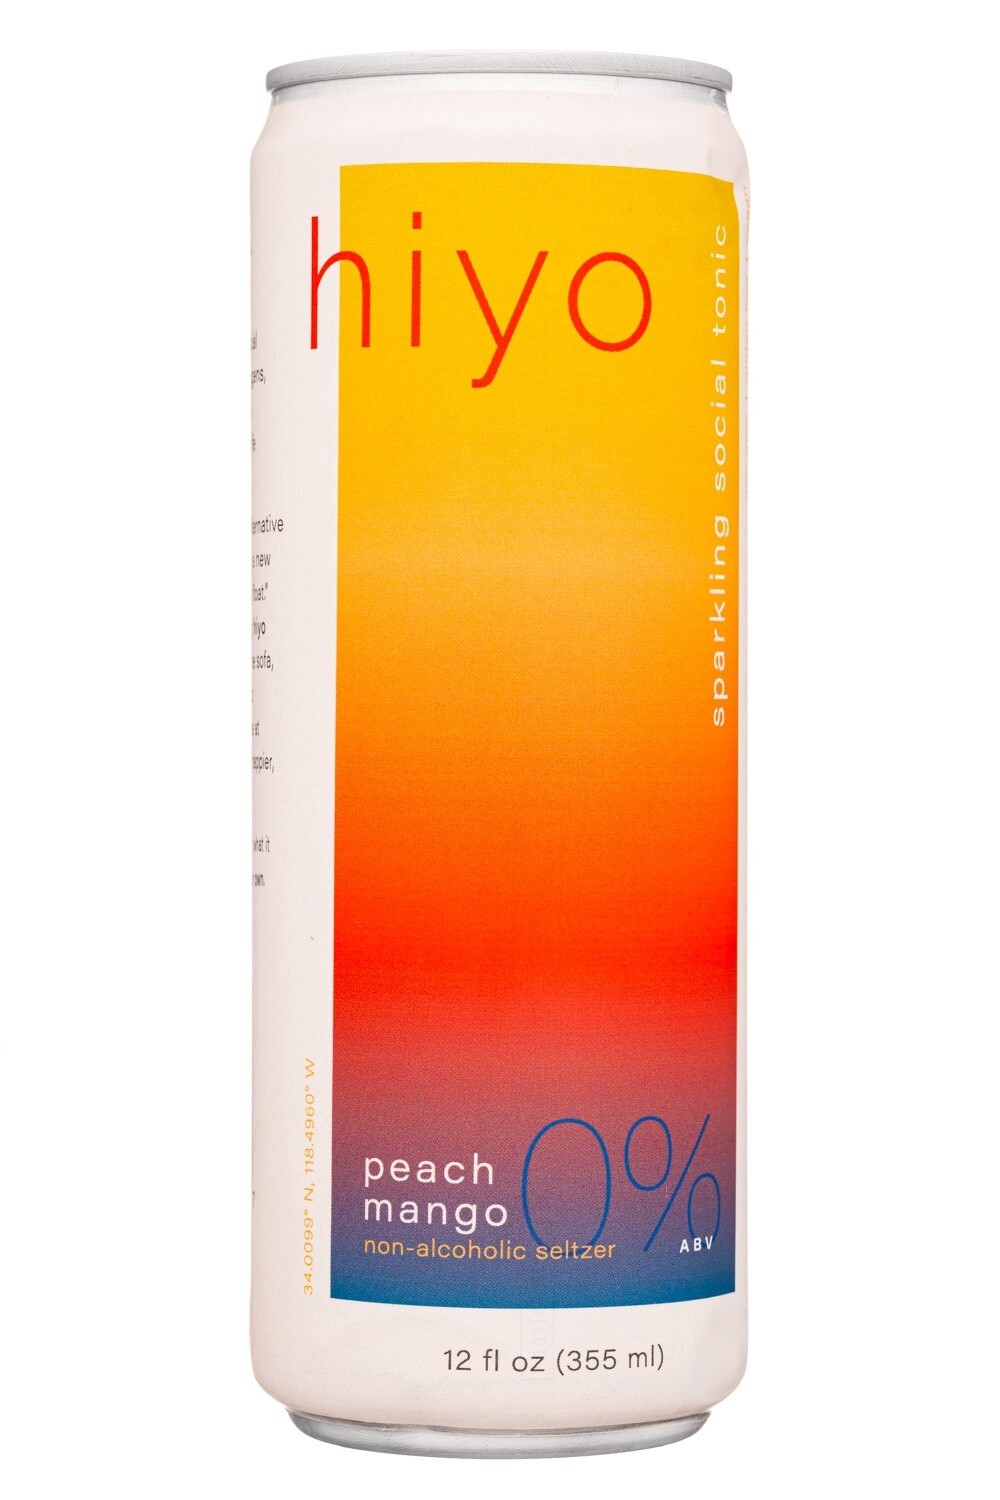 Hiyo Peach Mango (Non-Alcoholic) Cans